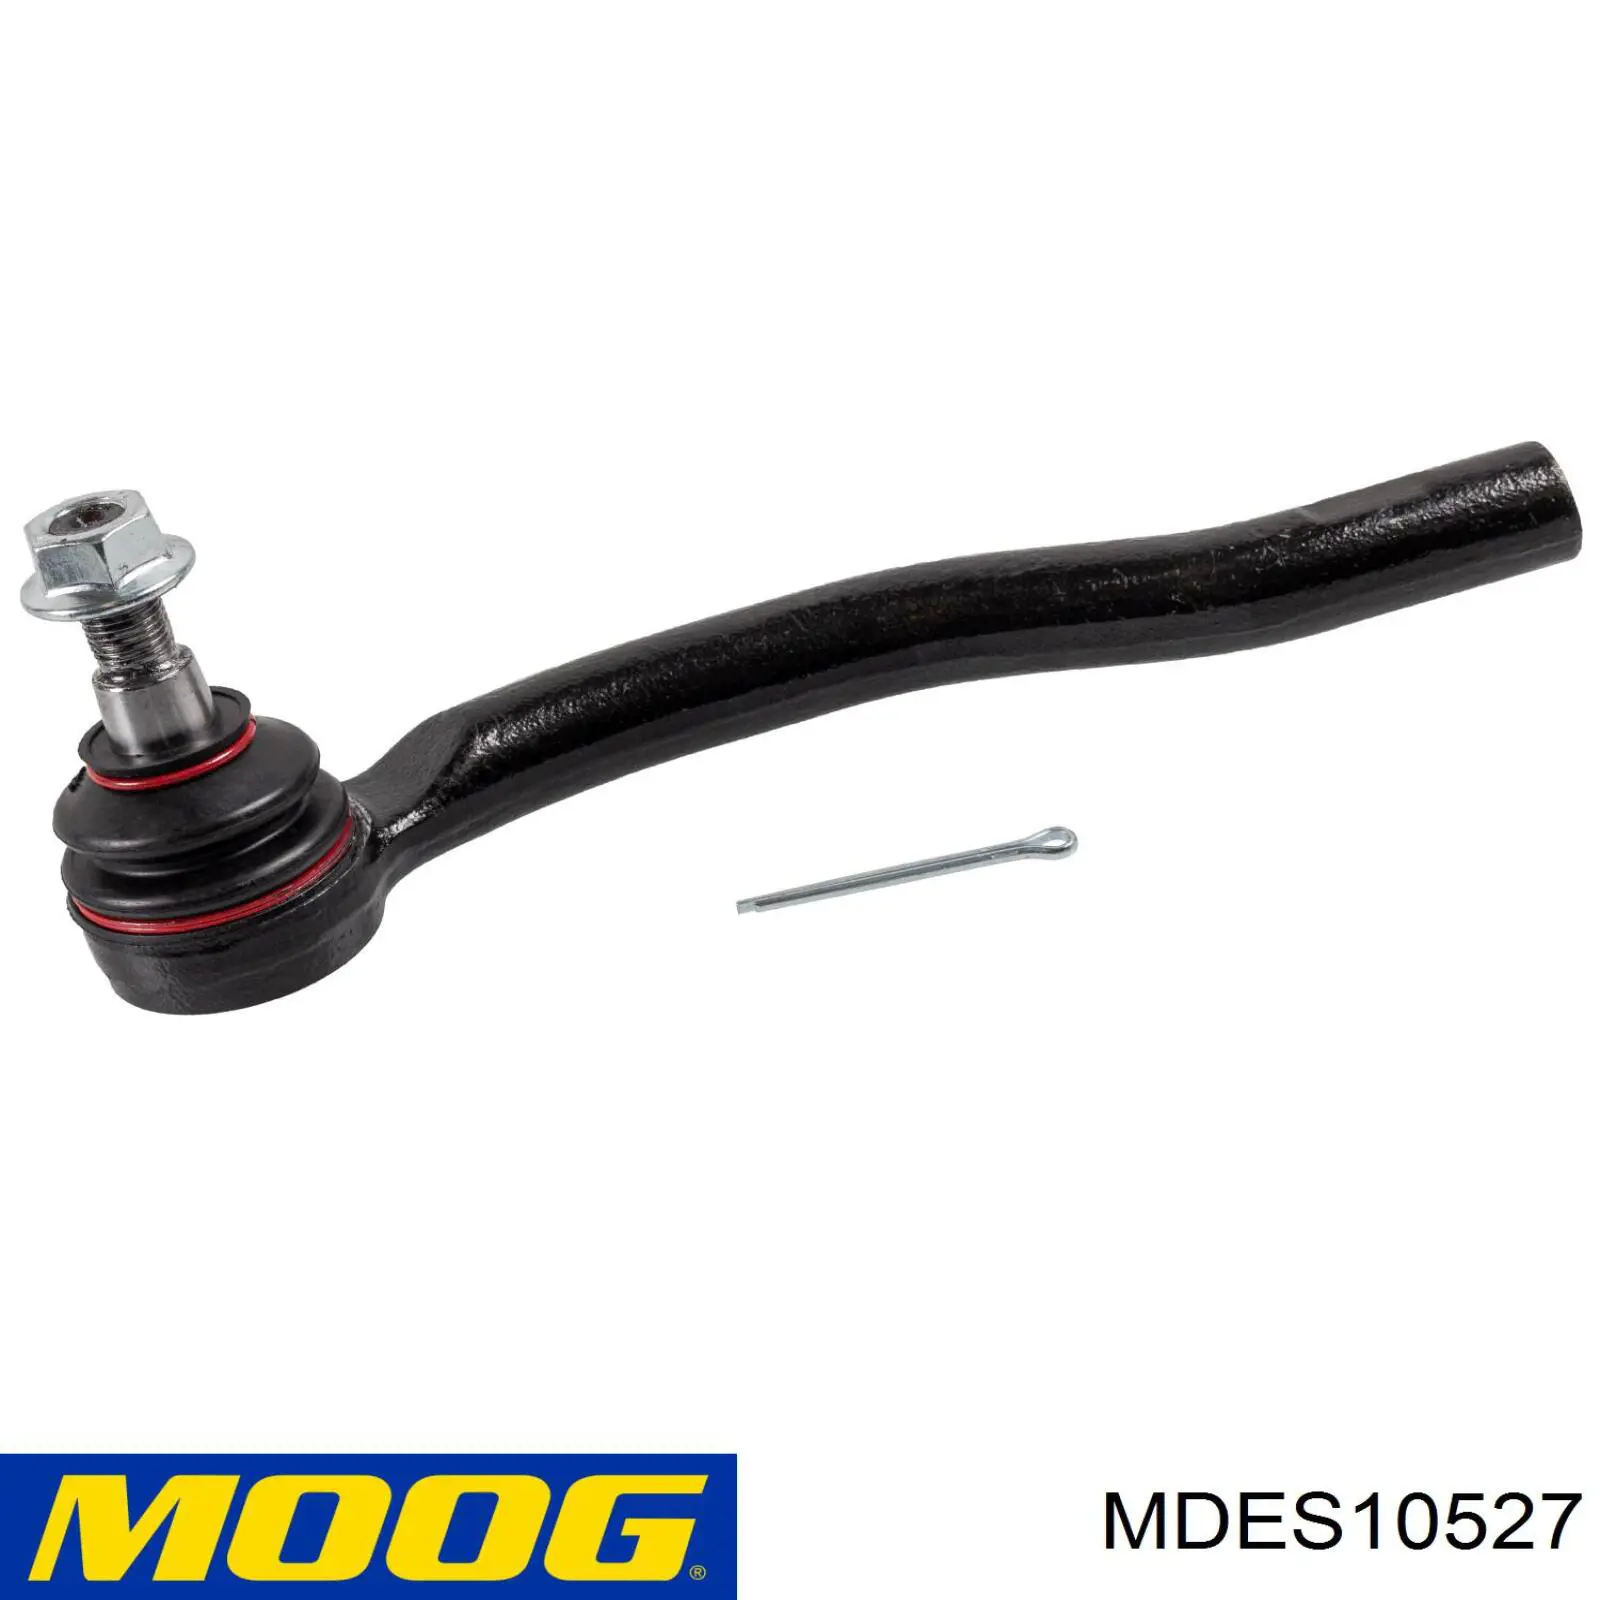 Rótula barra de acoplamiento exterior MDES10527 Moog